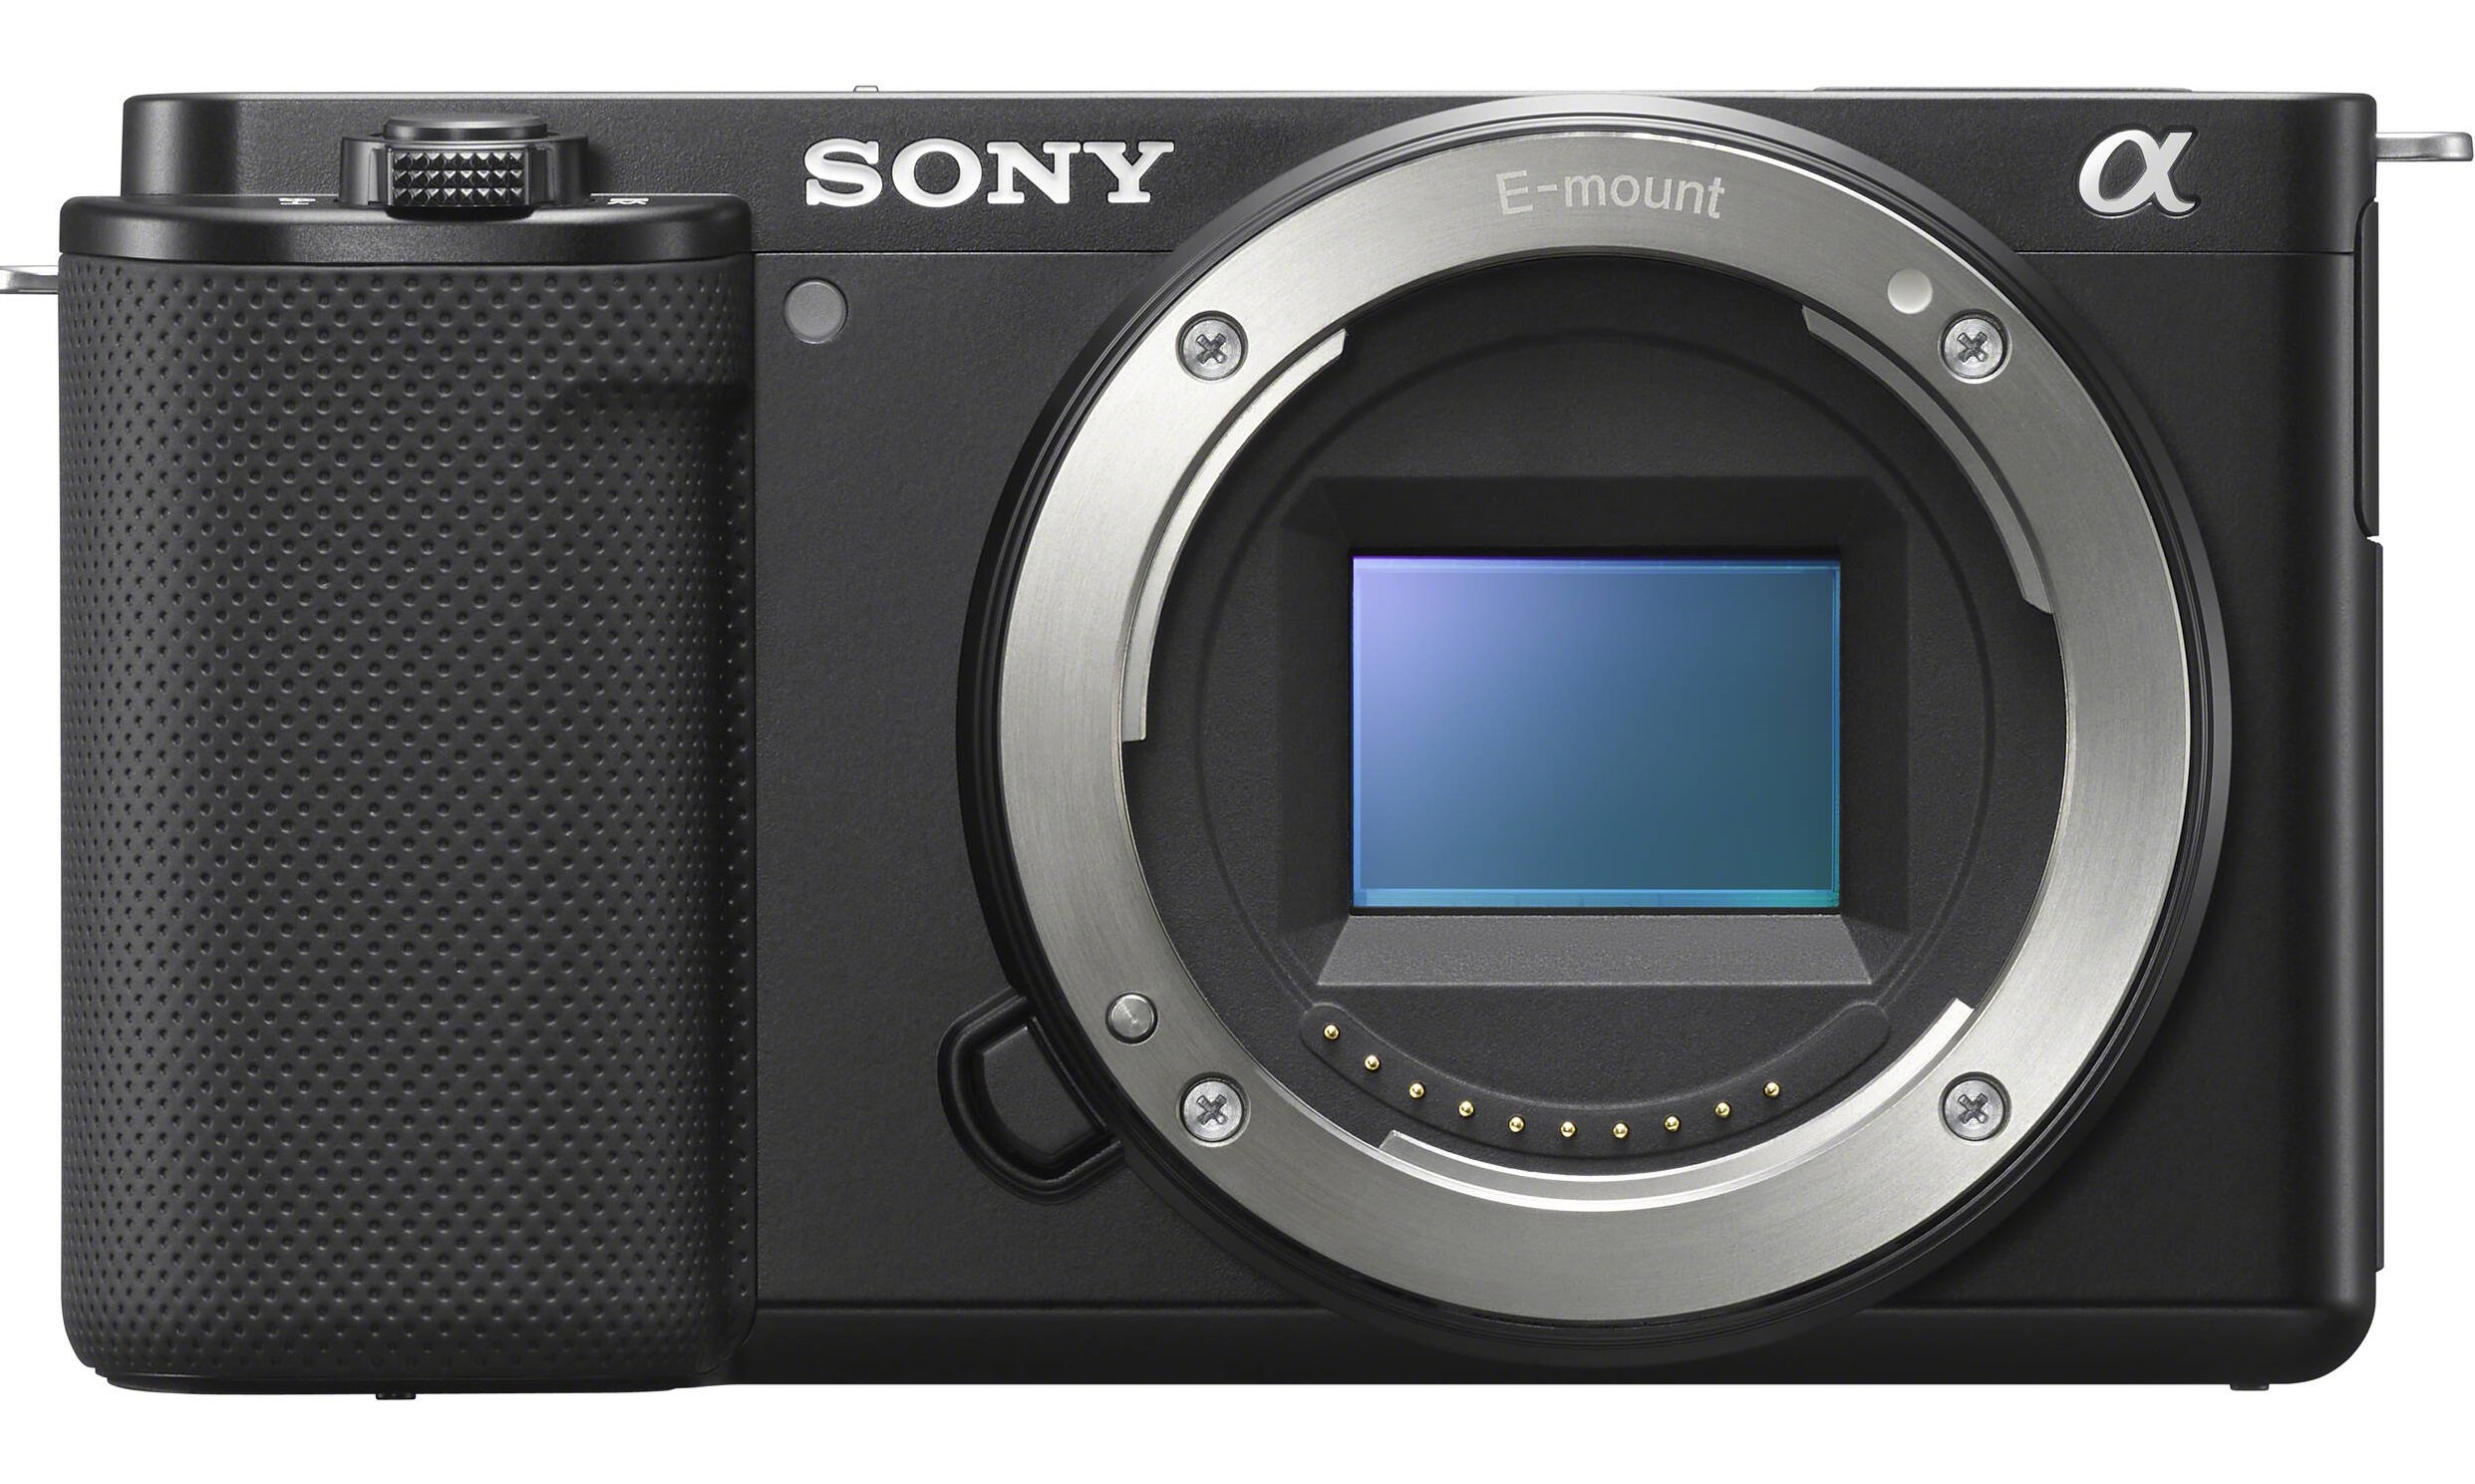 Sony ZV-E10 tích hợp nhiều chế độ chụp thông minh